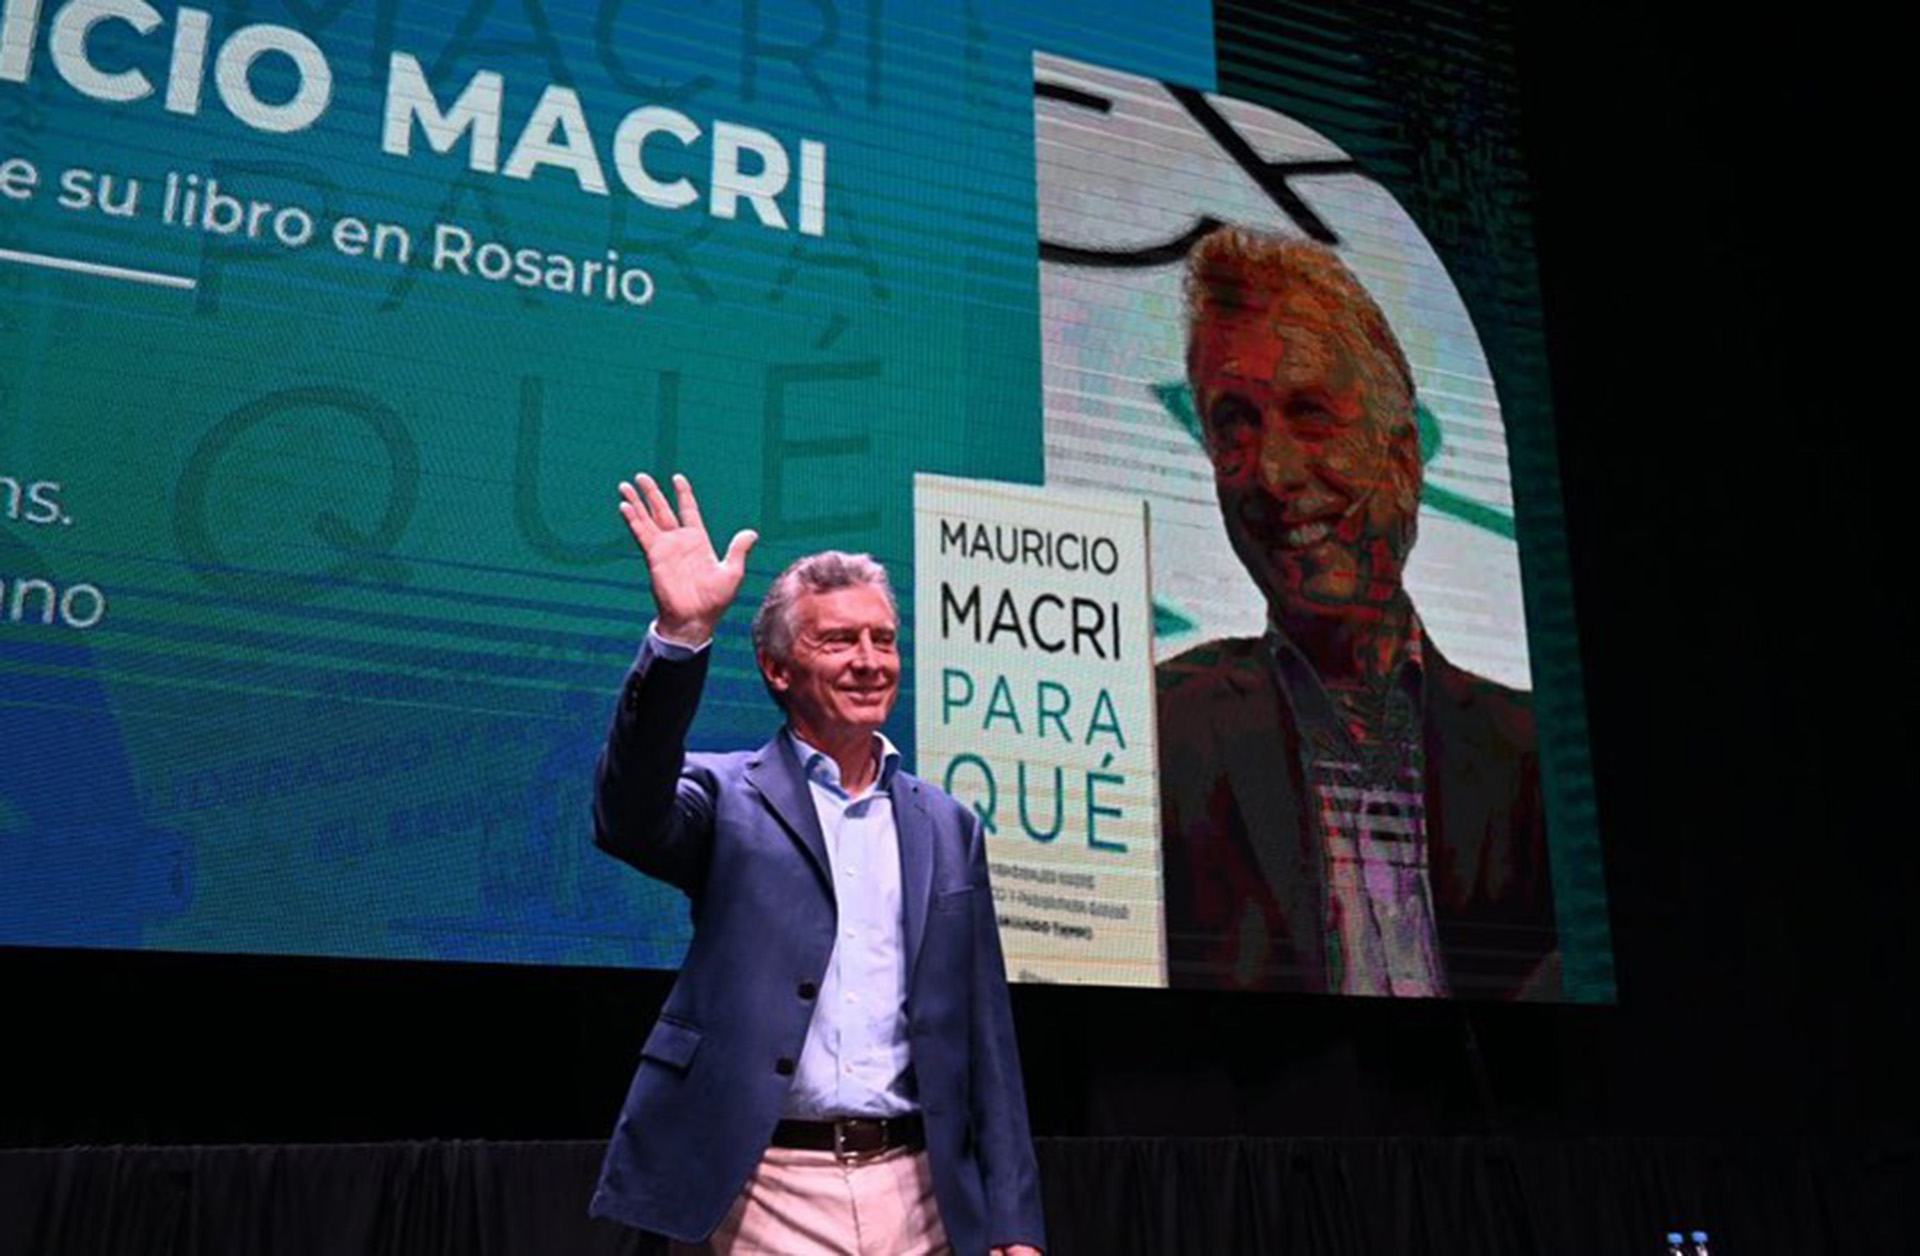 Mauricio Macri medita el anuncio sobre su futuro político, mientras acelera la filmación del documental sobre su vida